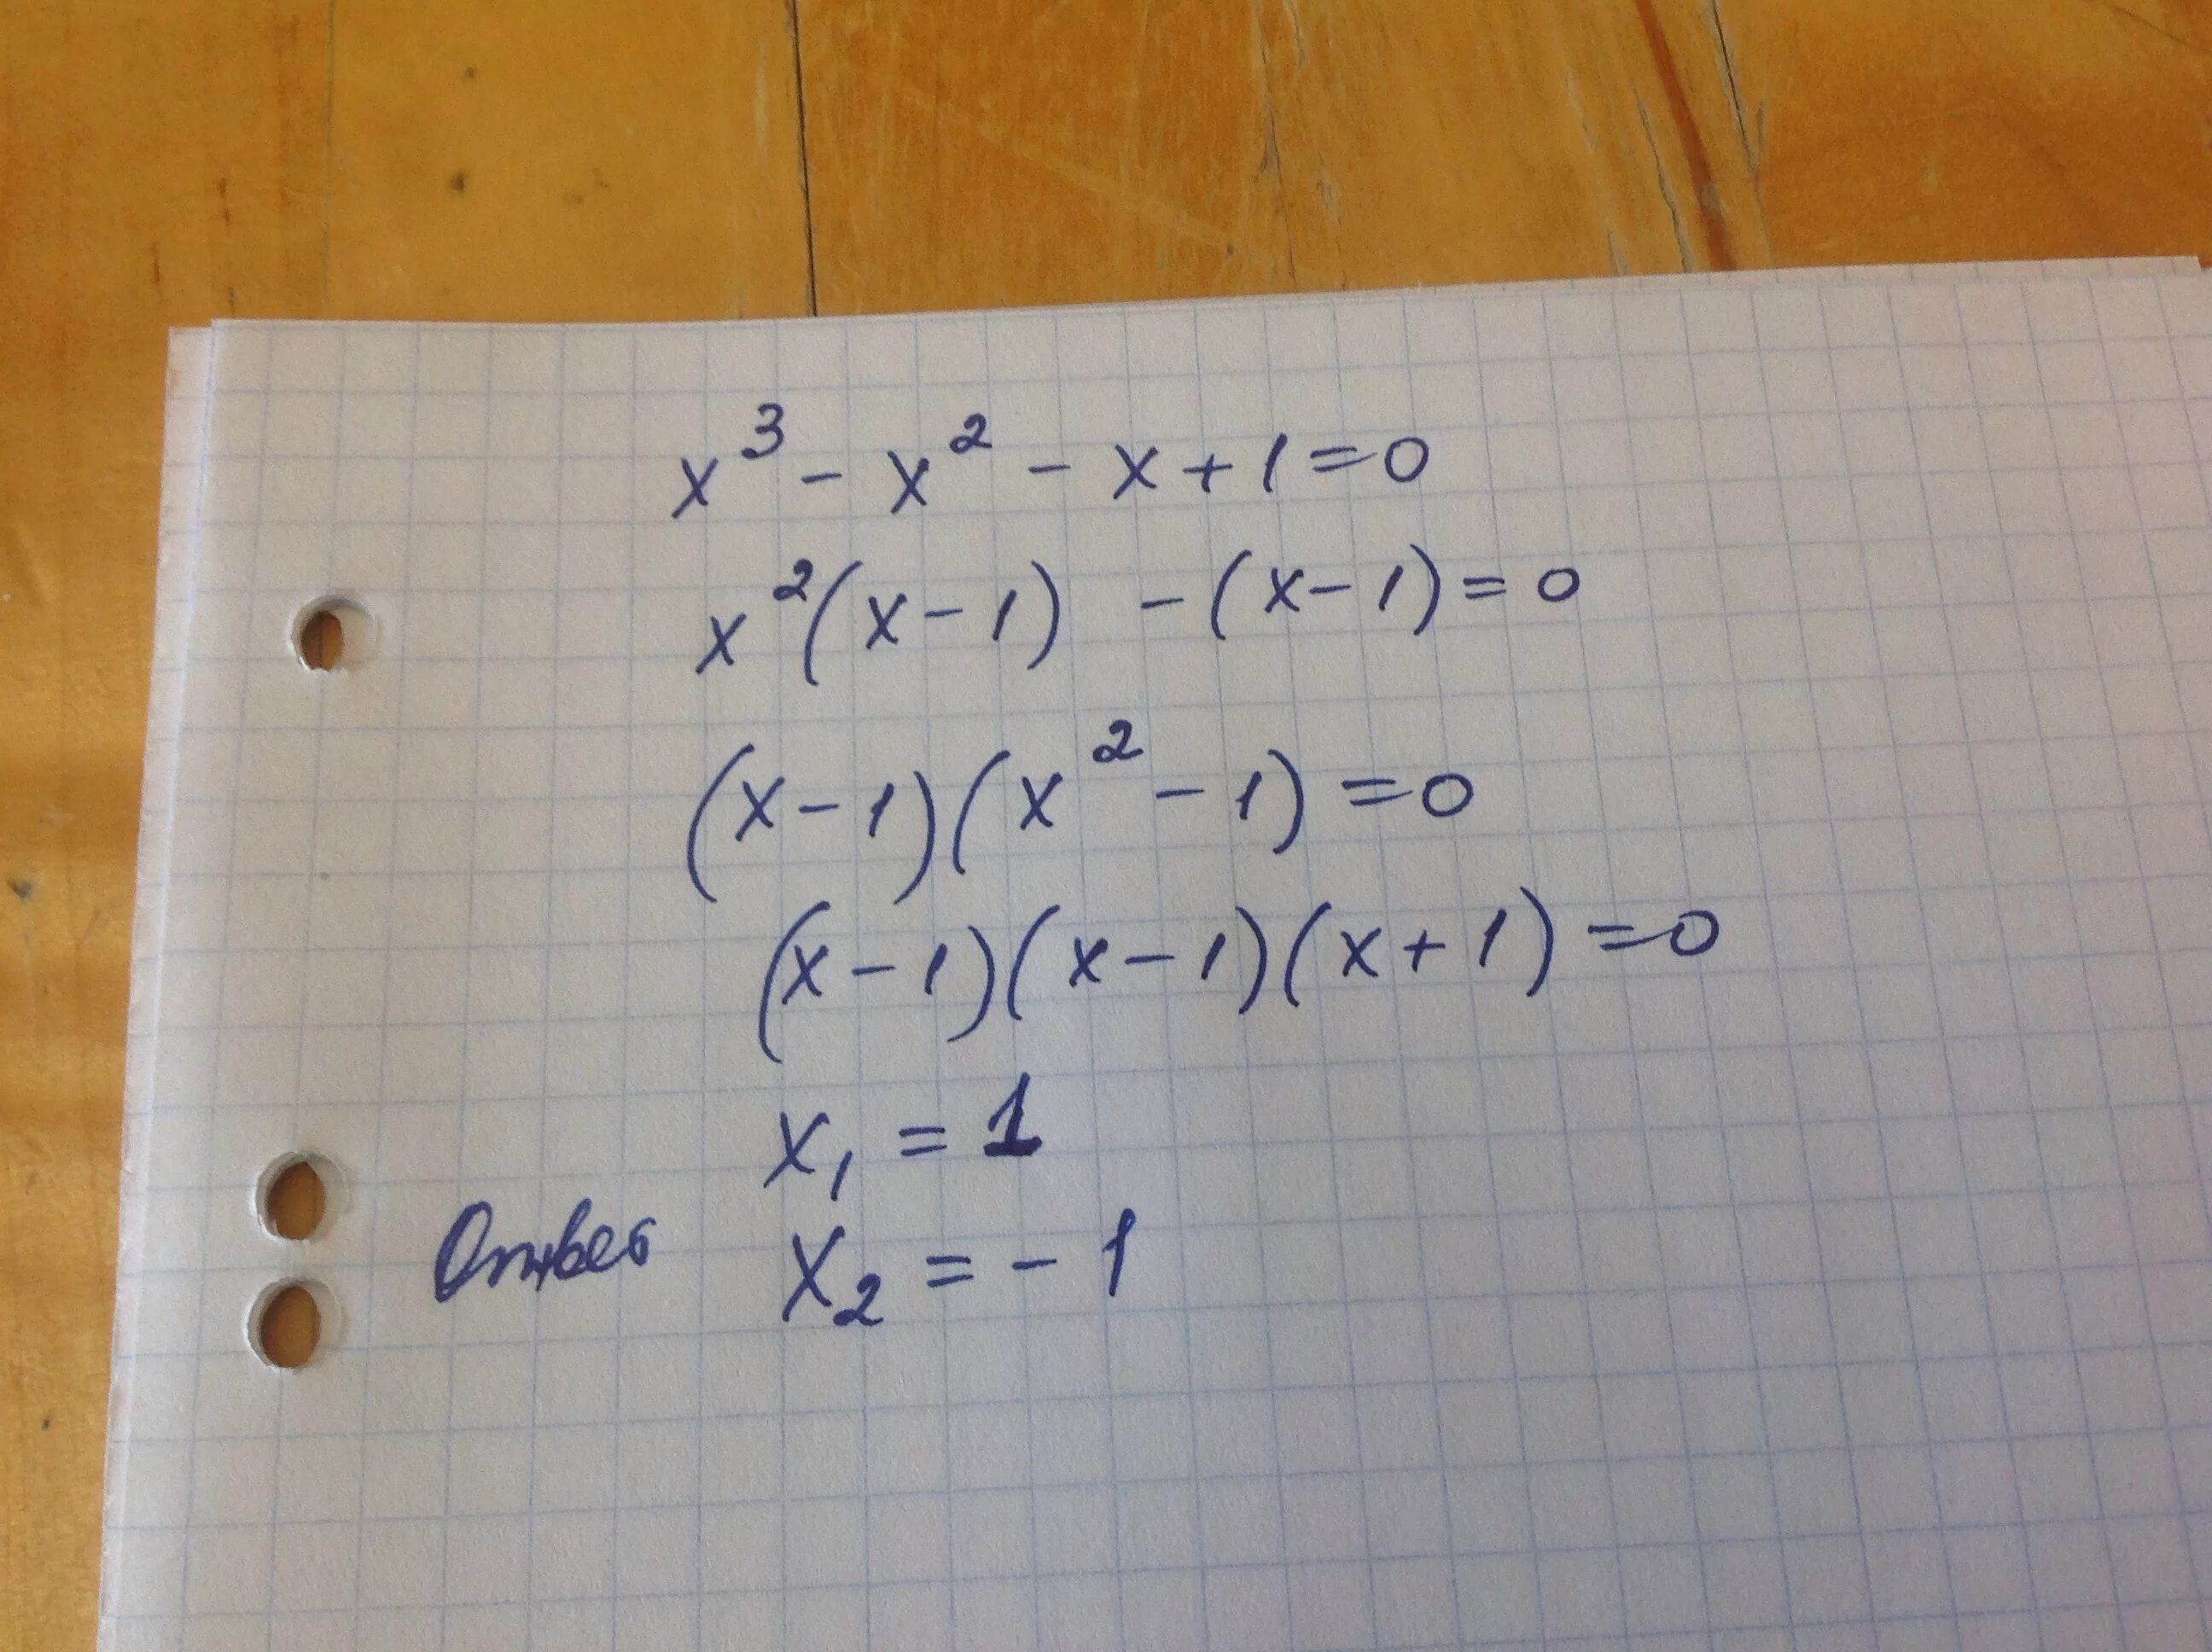 3x 17 x 9 x 3. (X-2)(-2x-3)=0. X^3-X^2-X+1=0. 2^X=3^X. 3-X/3=X/2.